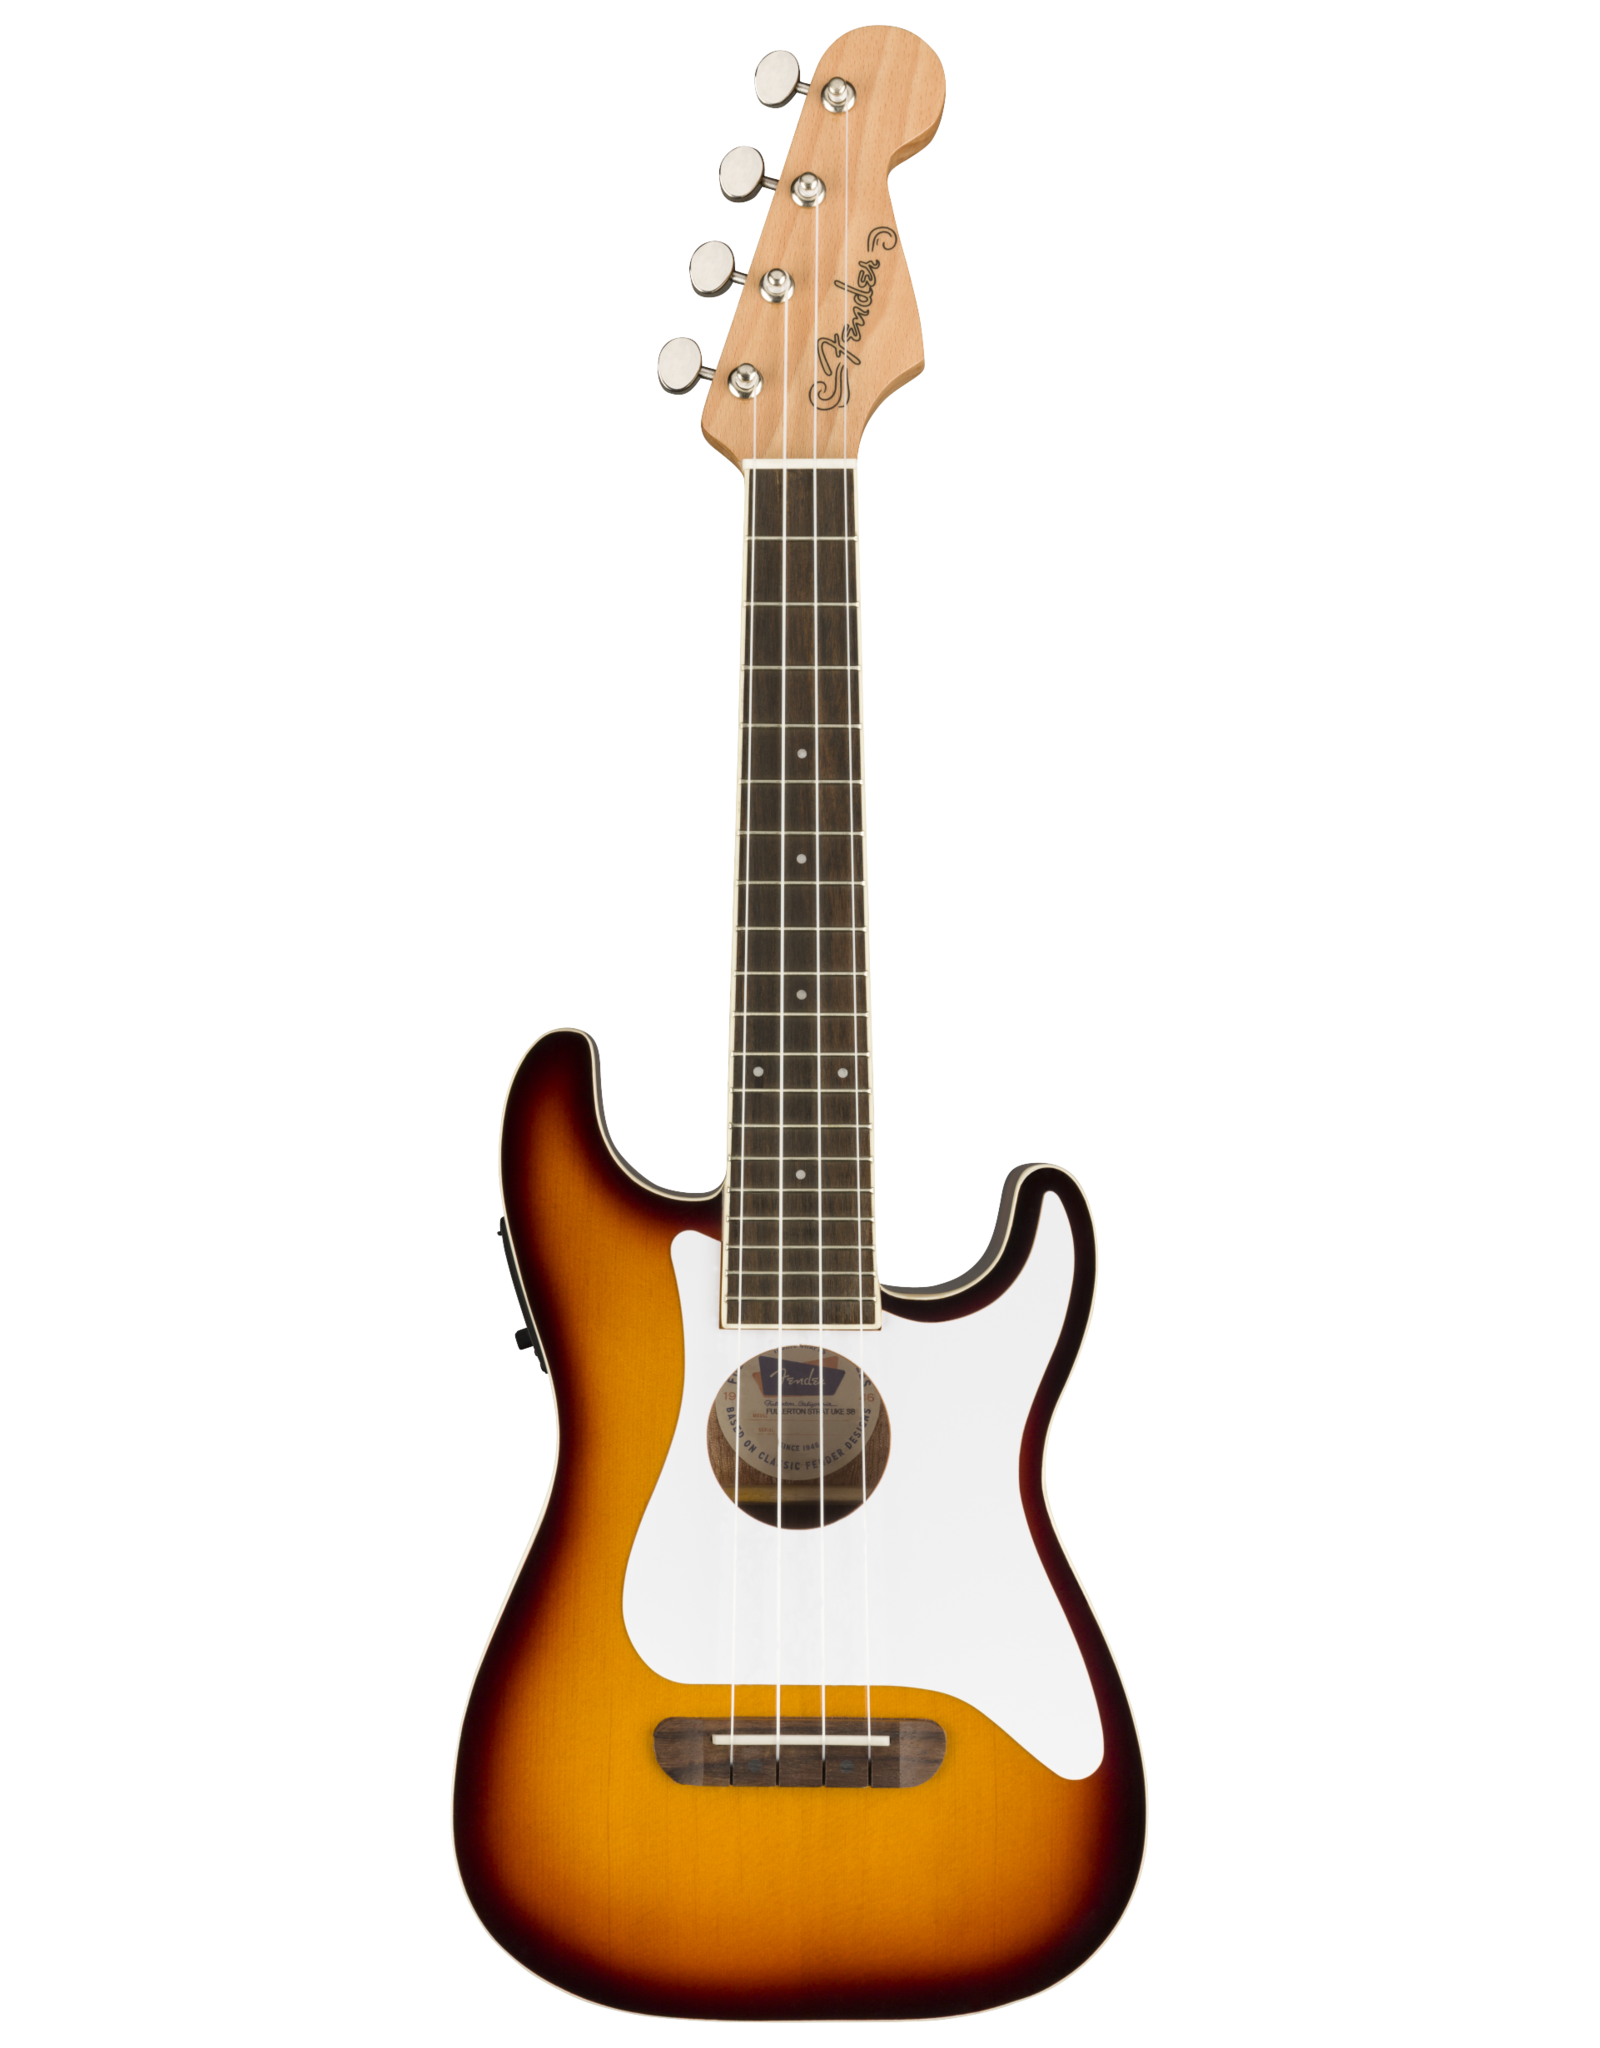 Fender Fender Fullerton Strat Ukulele, Sunburst